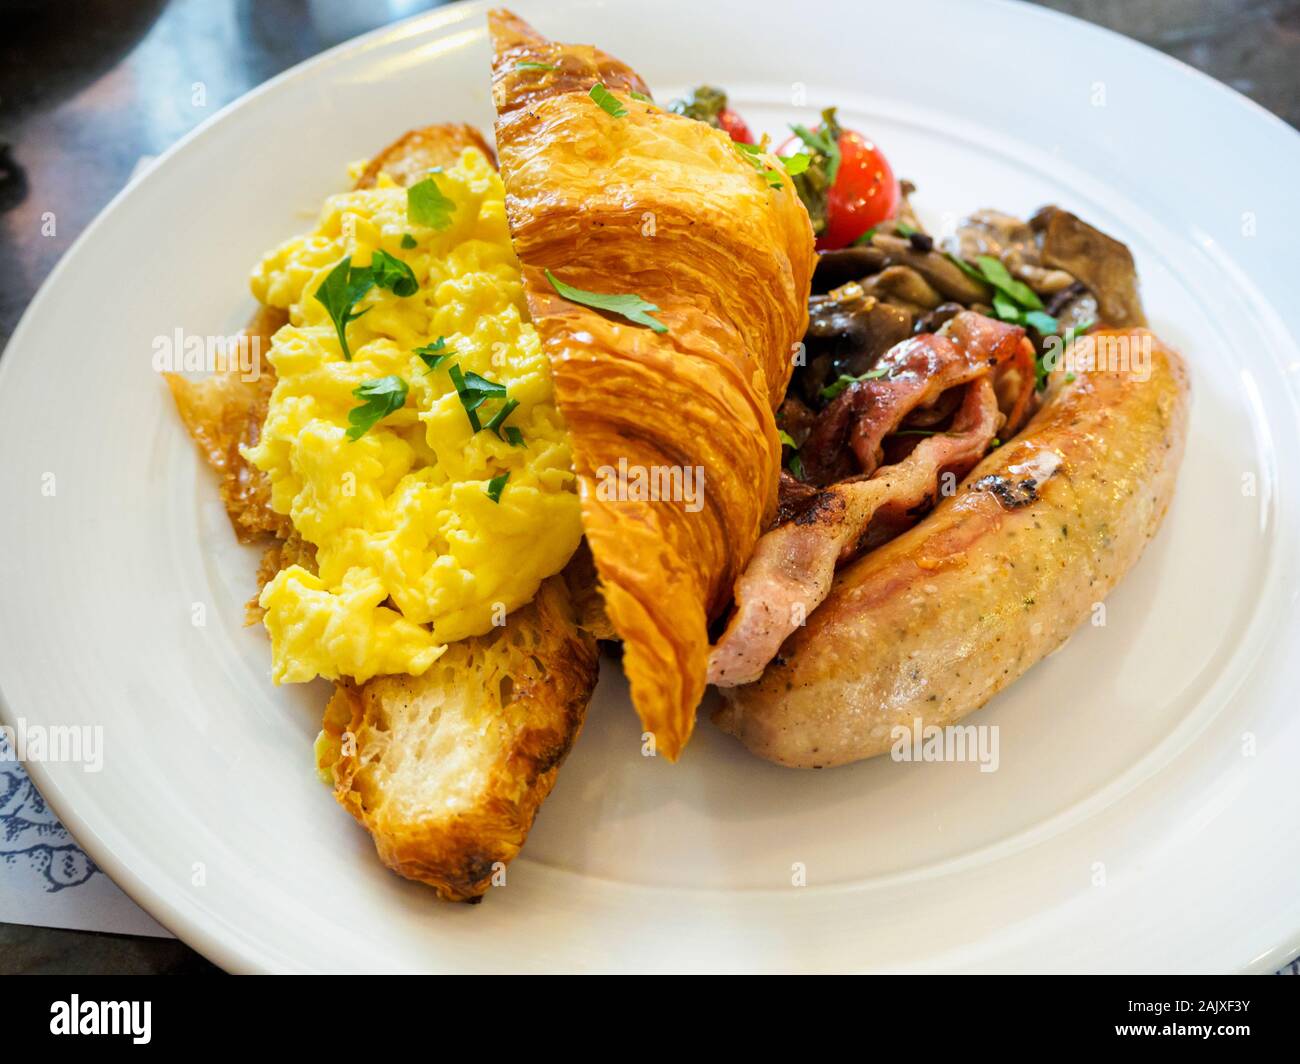 Ein ganztägiges Frühstück/Brunch combo Mahlzeit Teller mit Rührei, Croissants, Wurst, Speck und Pilzen auf eine weisse Platte bei einer Western casual Resta Stockfoto